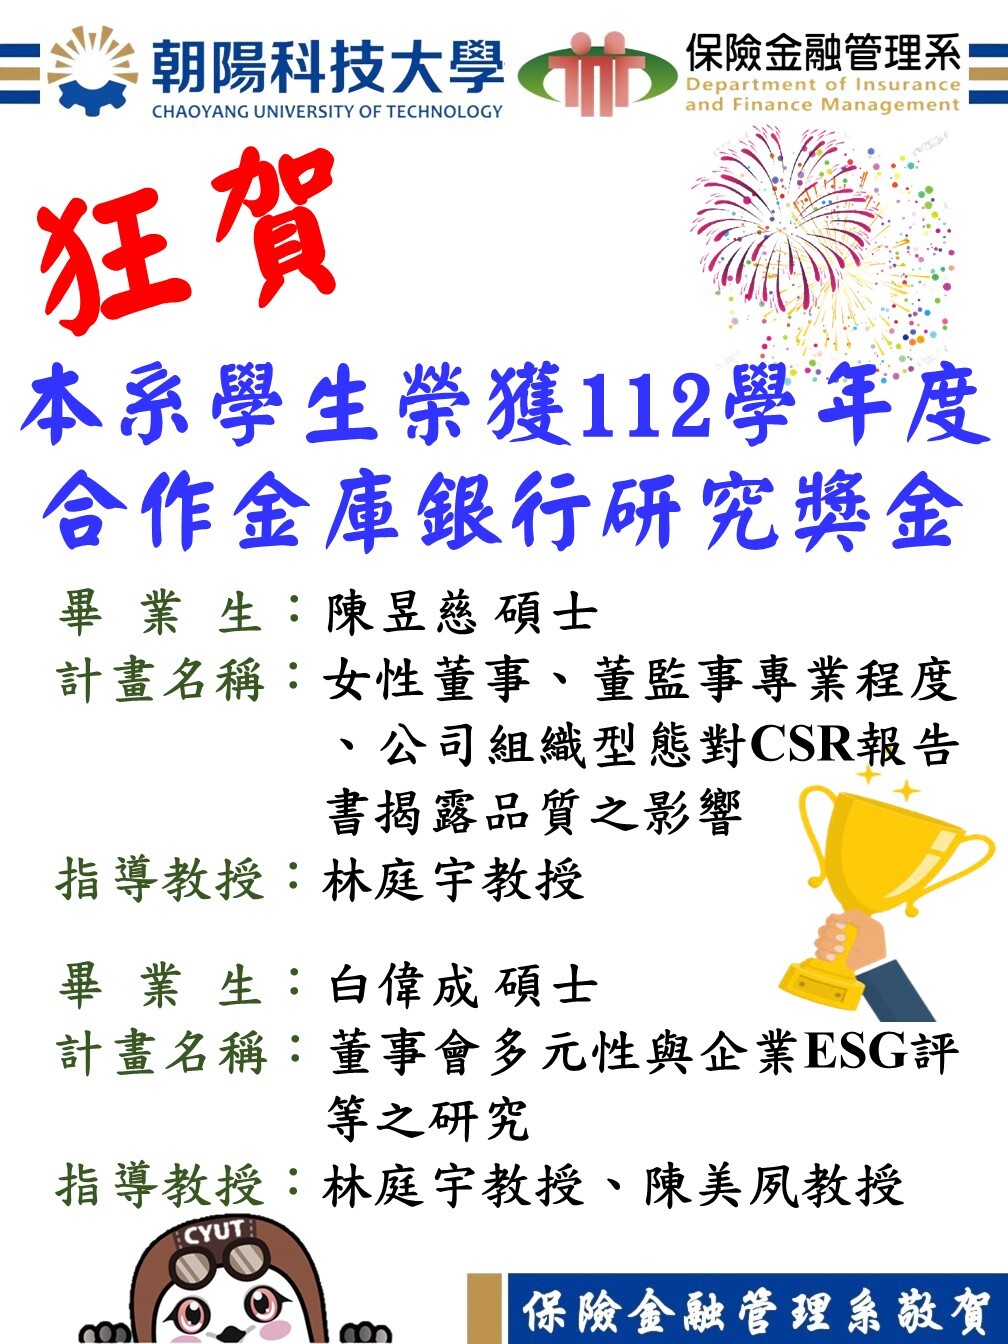 狂賀！本系學生陳昱慈、白偉成榮獲112學年度合作金庫銀行研究獎金